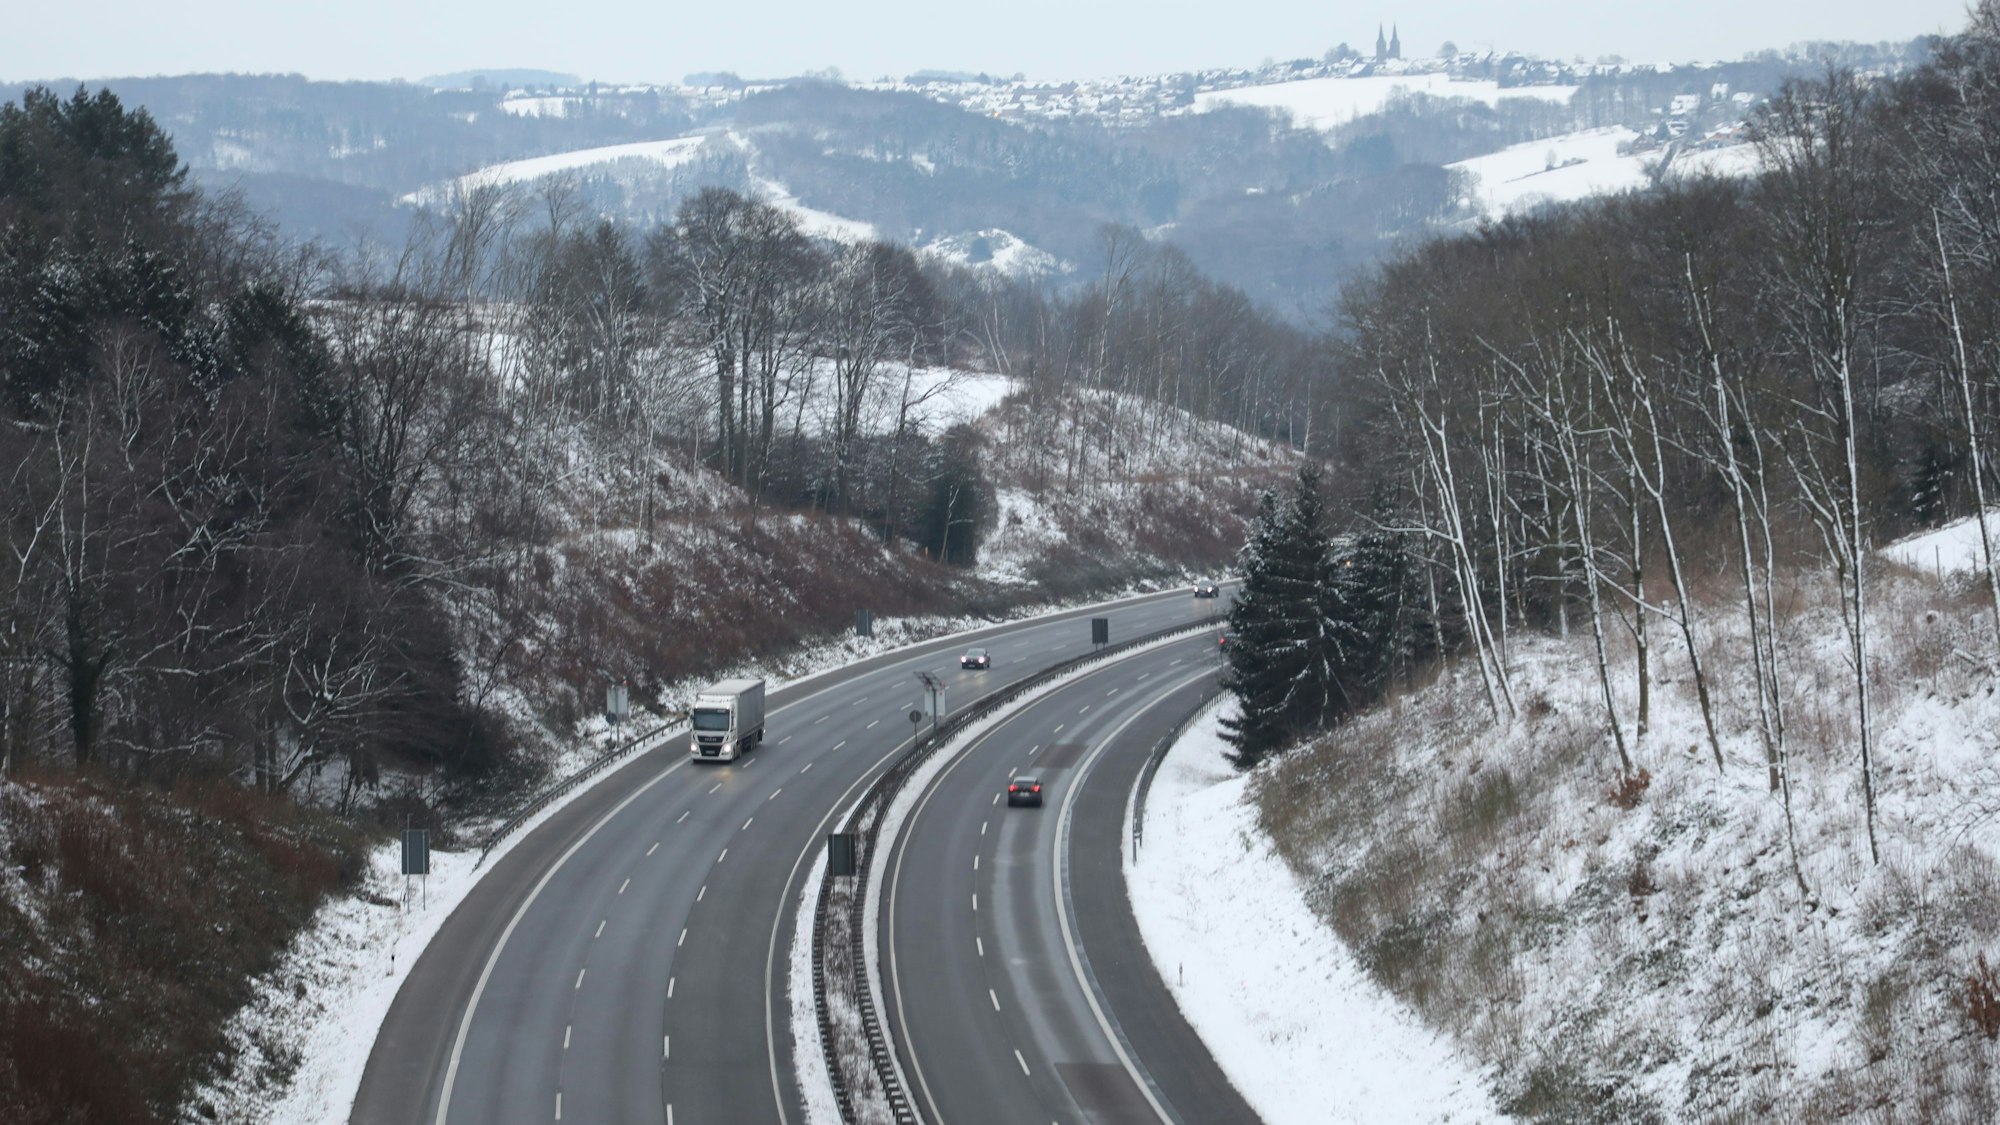 Eine relativ freie Autobahn 4 gibt den Blick frei auf eine verschneite Winterlandschaft mit dem Ort Marialinden am Horizont.